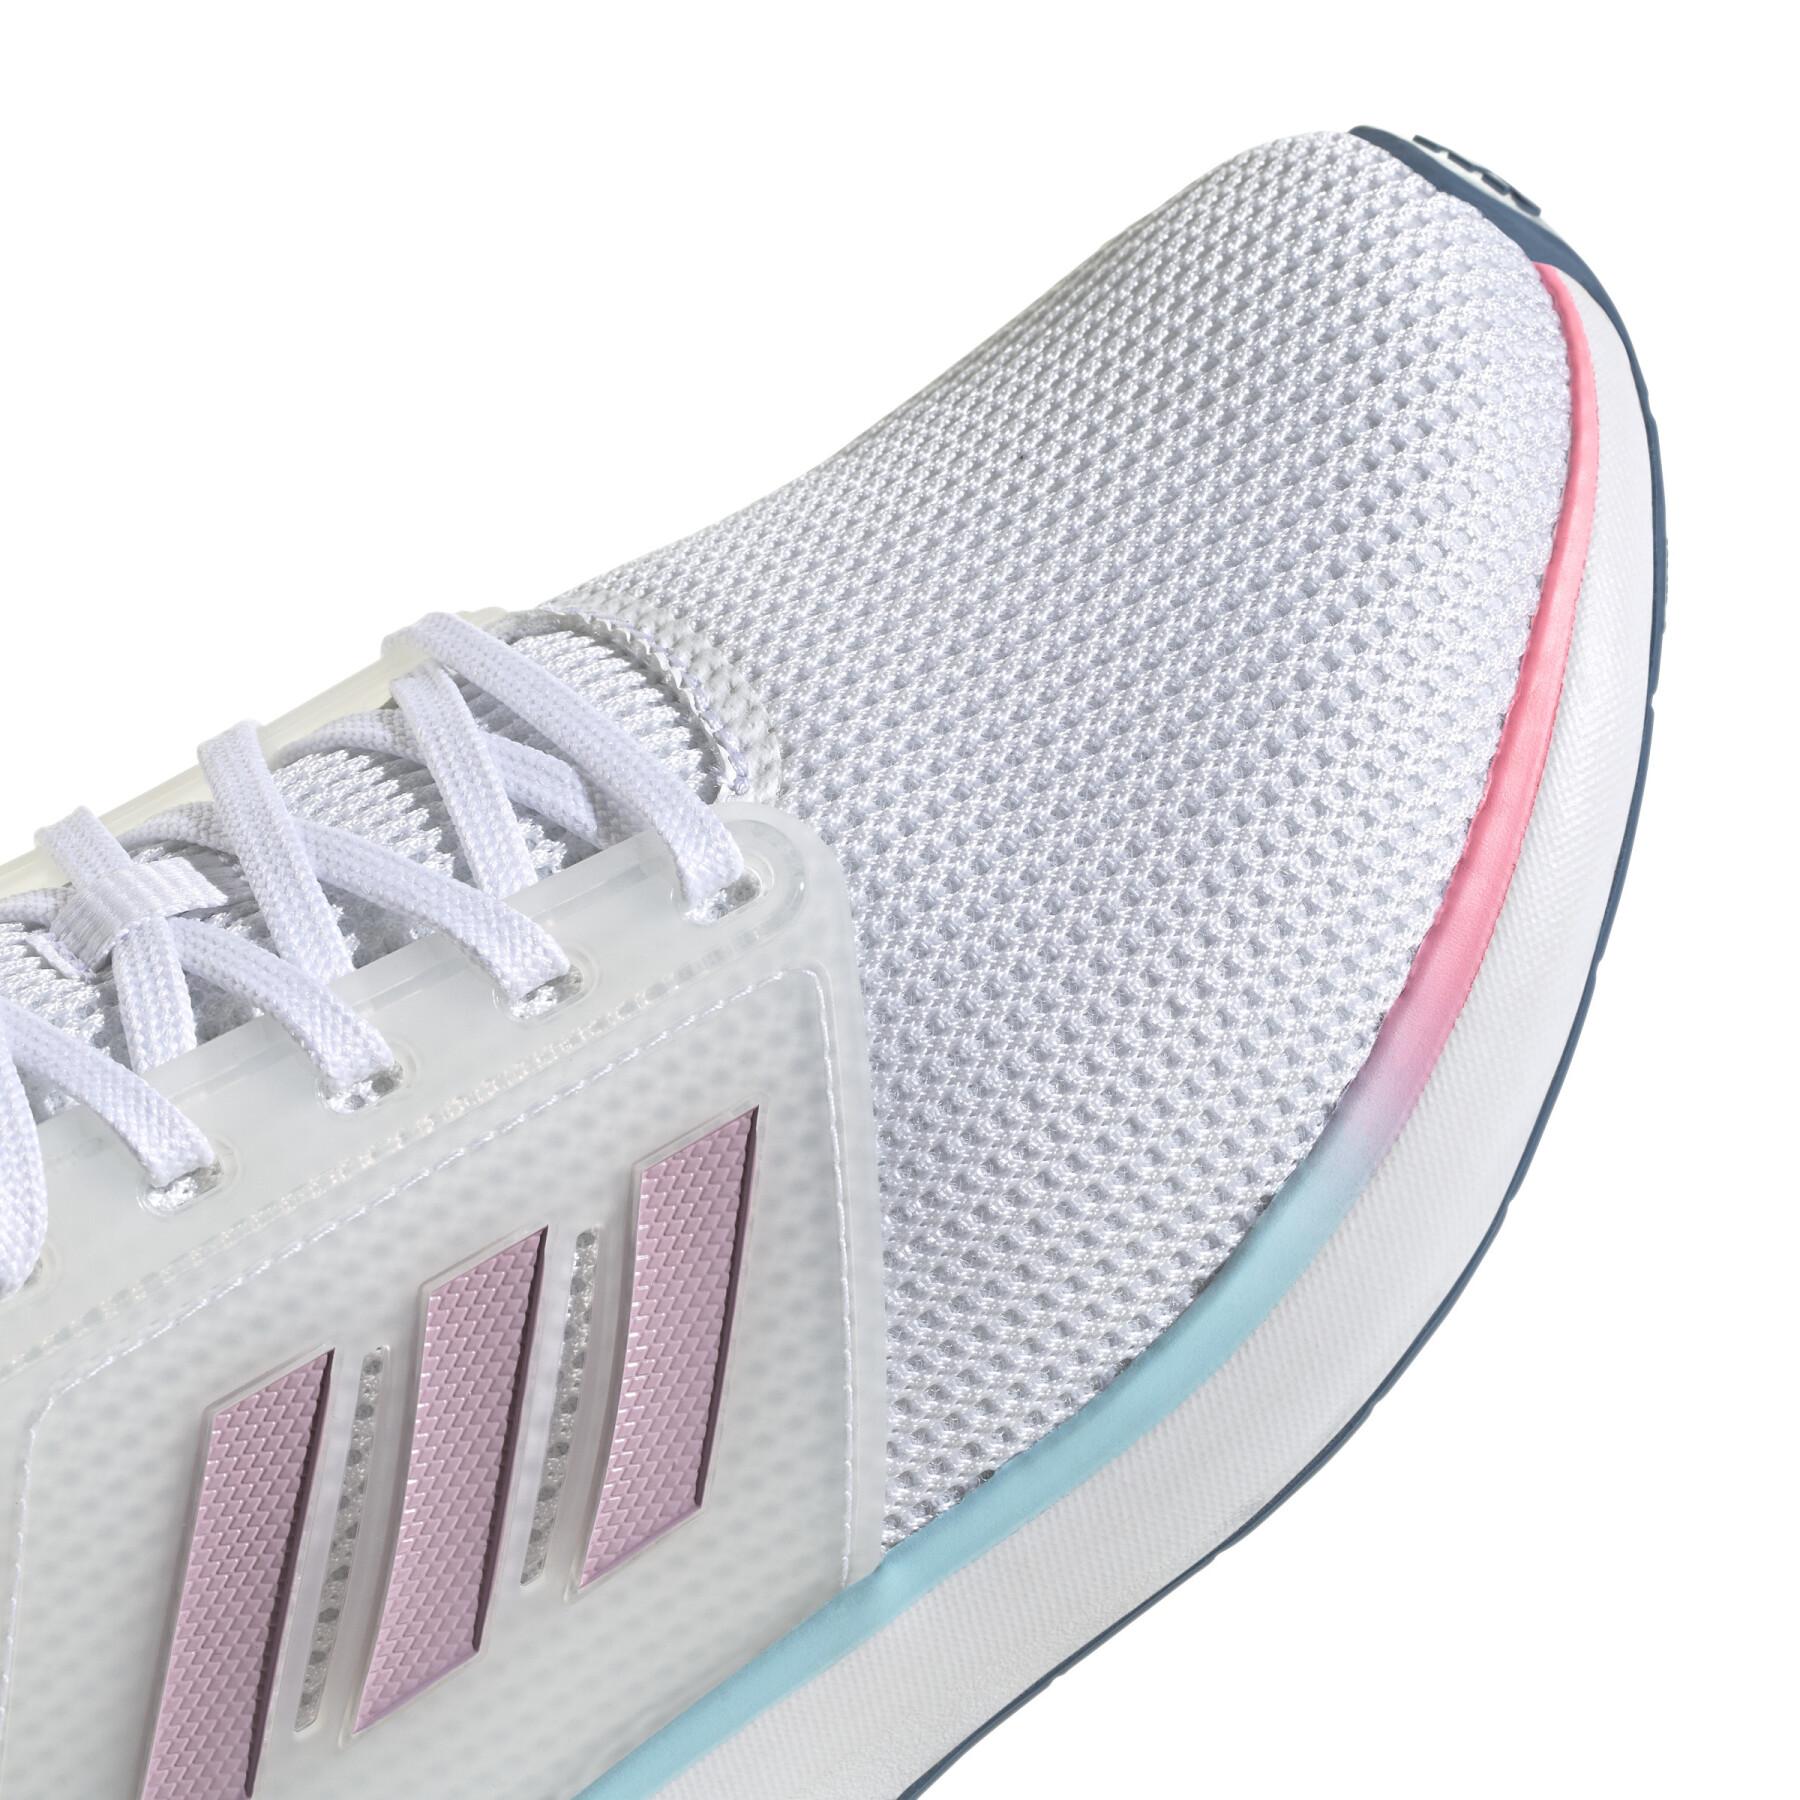 Chaussures de running femme adidas EQ19 Run